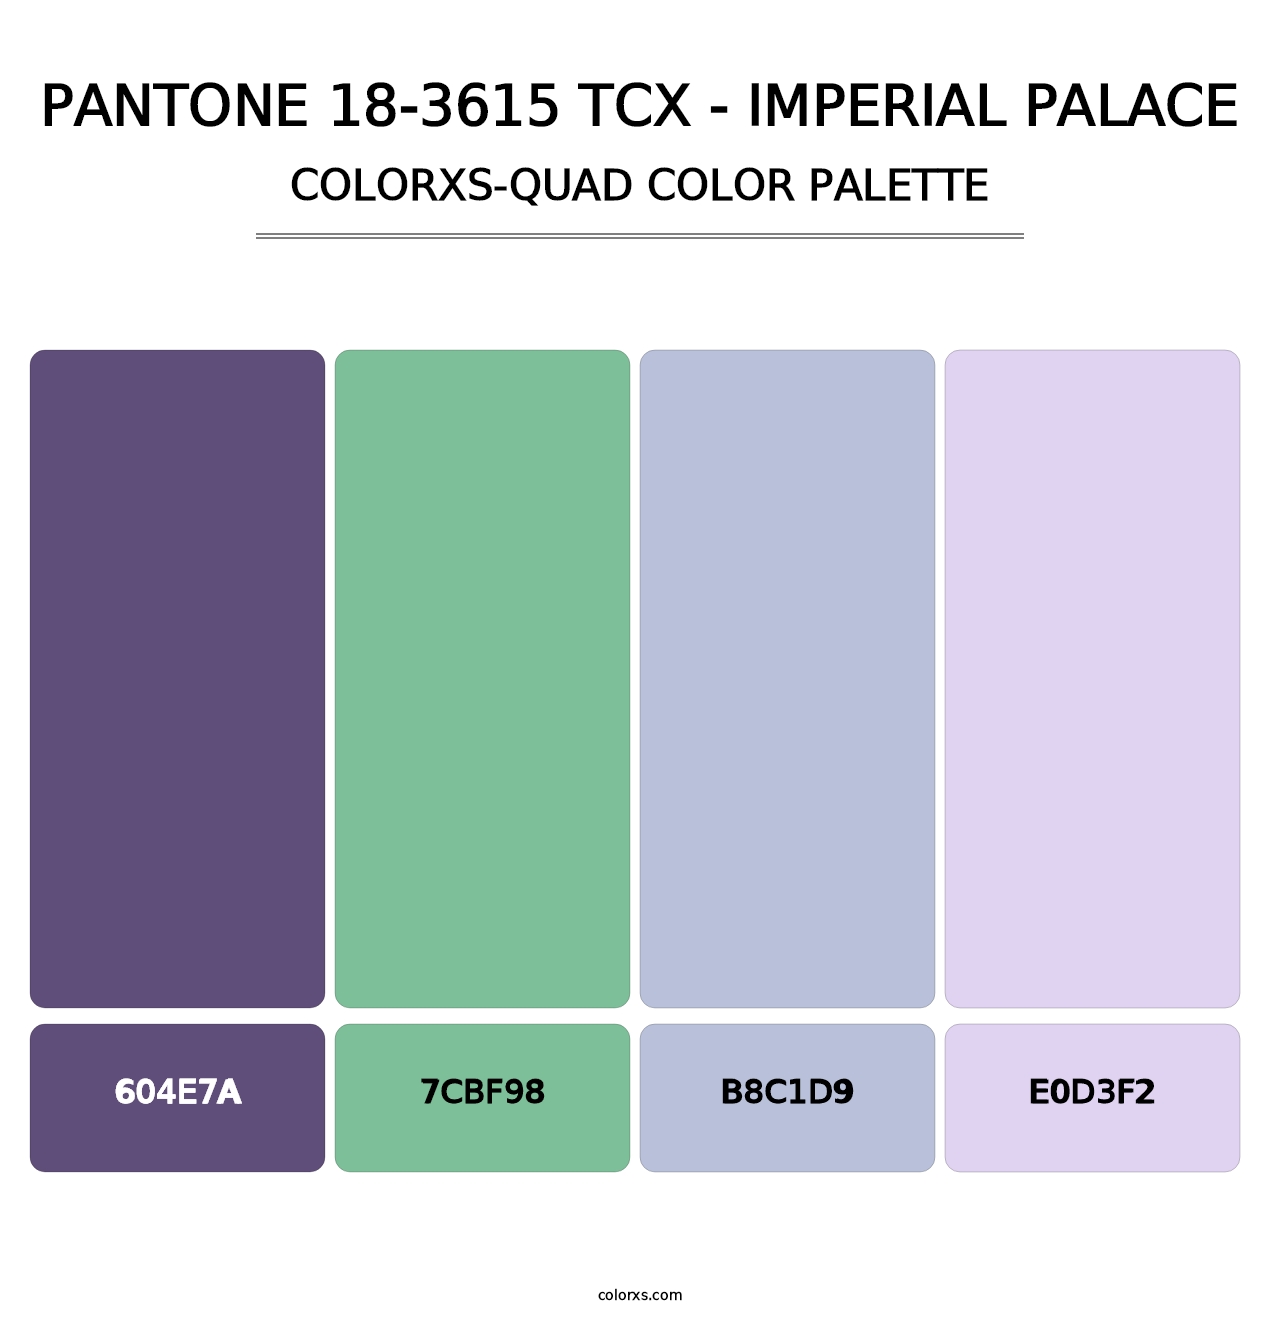 PANTONE 18-3615 TCX - Imperial Palace - Colorxs Quad Palette